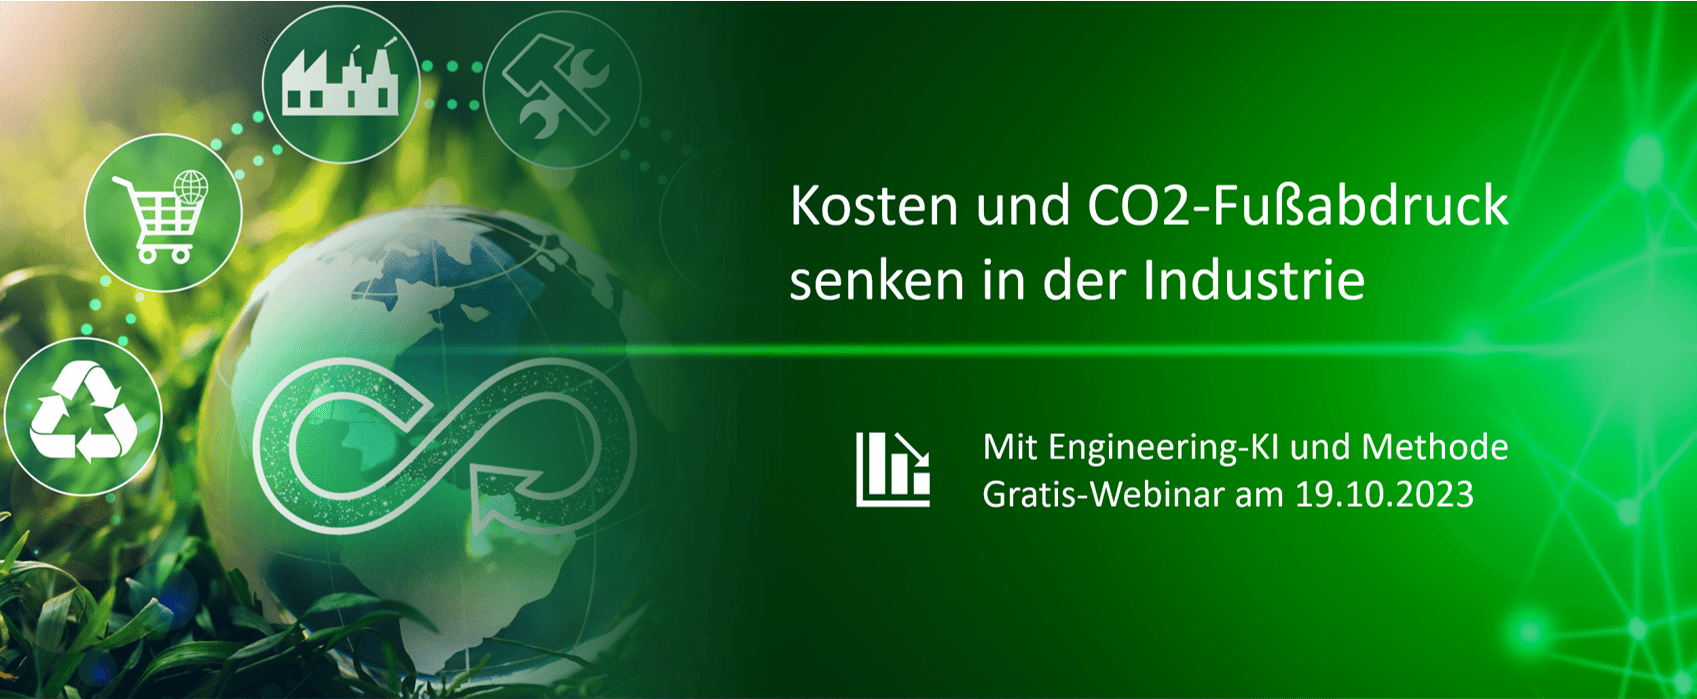 Webinar: Kosten und CO2-Fußabdruck senken in der Industrie mit Engineering-KI und Methode